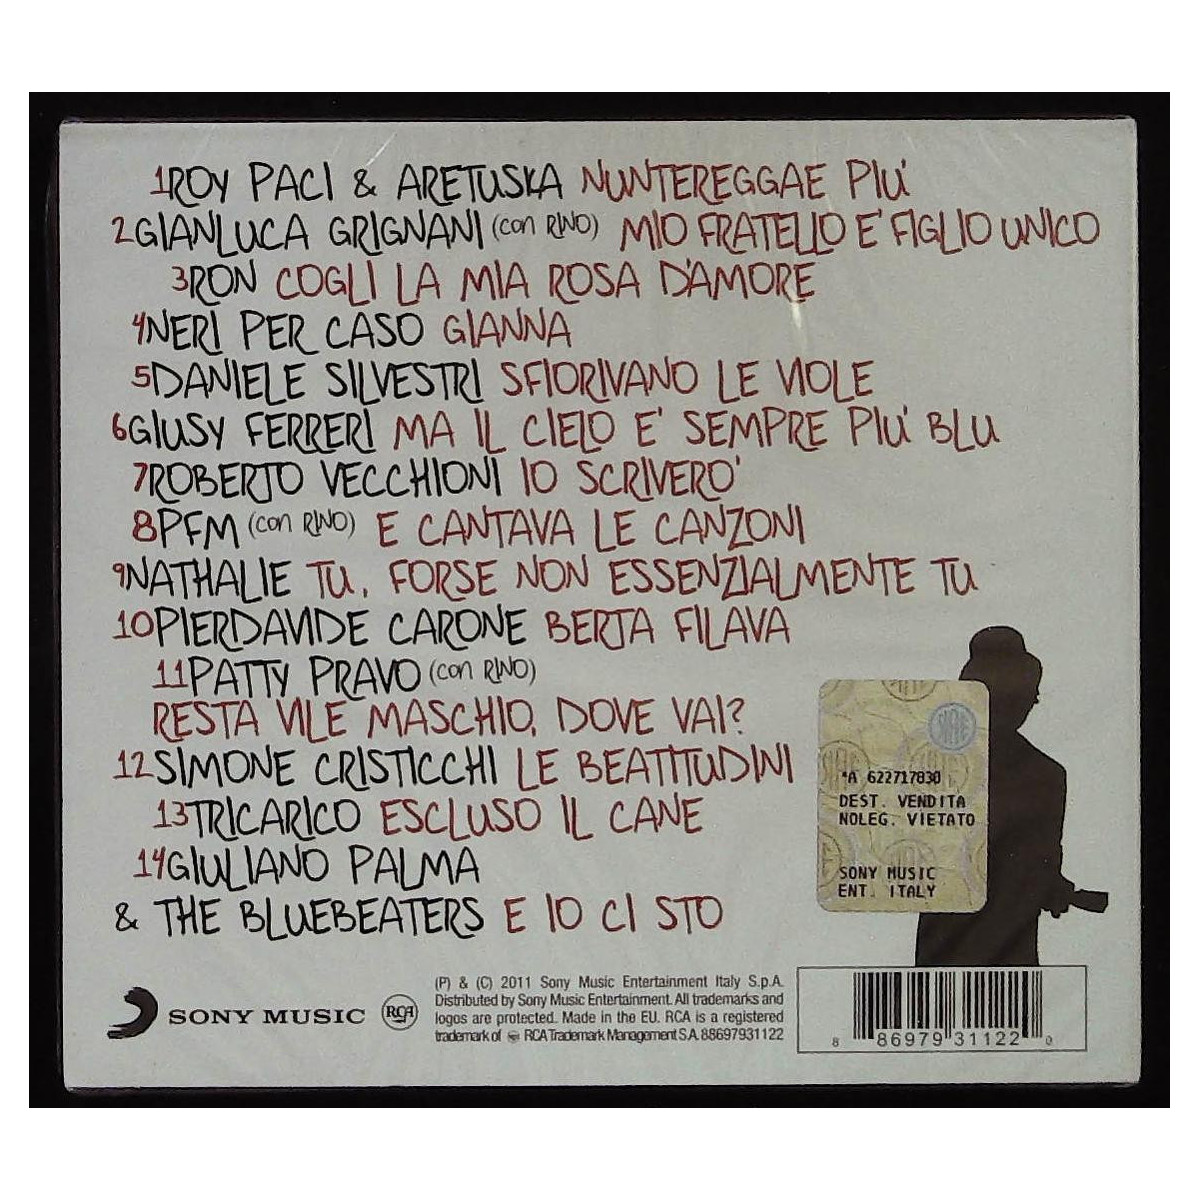 Rino Gaetano Lp - Musica e Film In vendita a Torino